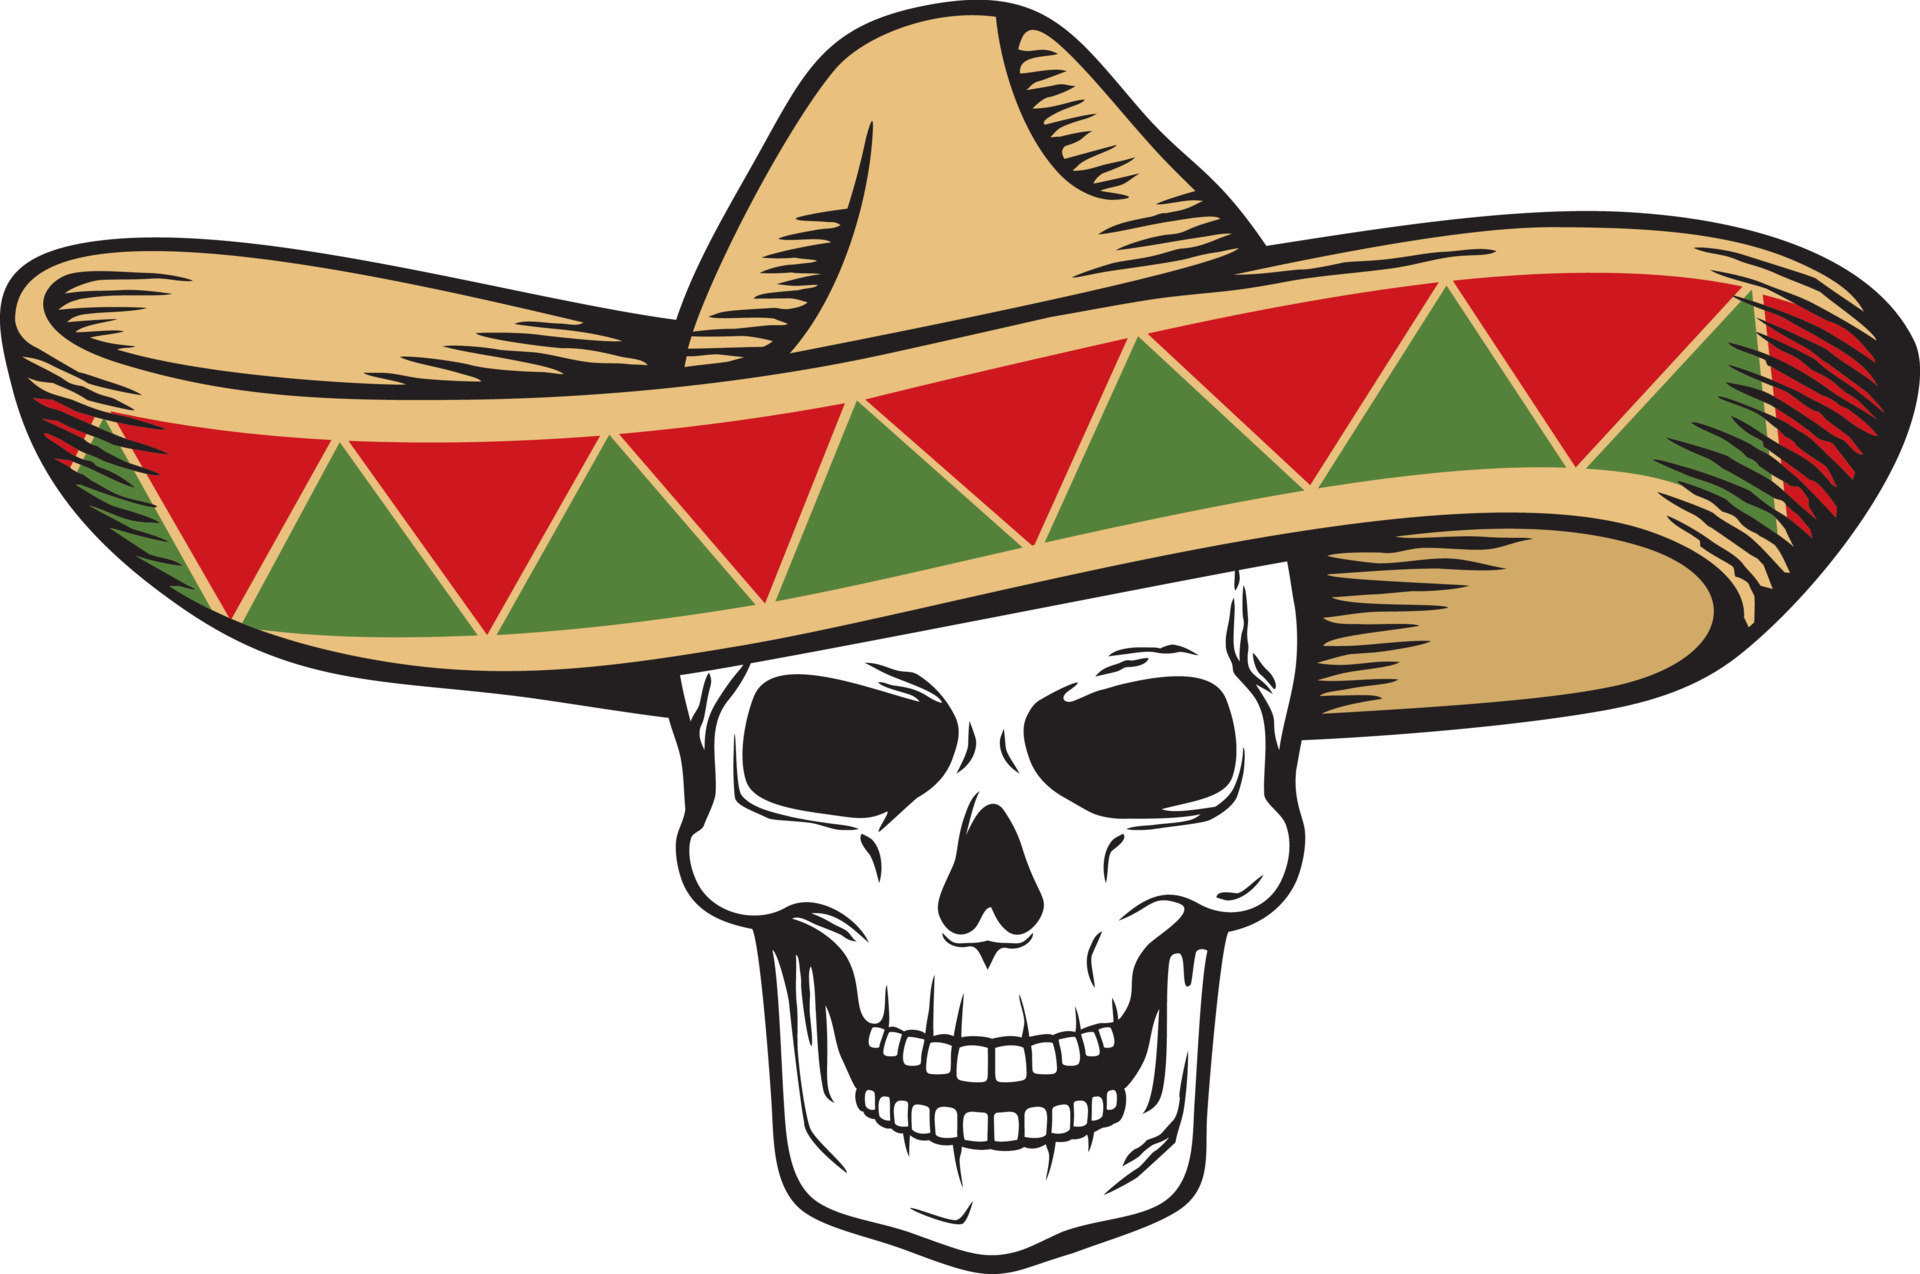 https://static.vecteezy.com/ti/vettori-gratis/p3/15620188-sombrero-messicano-cappello-e-umano-cranio-vettore-illustrazione-vettoriale.jpg